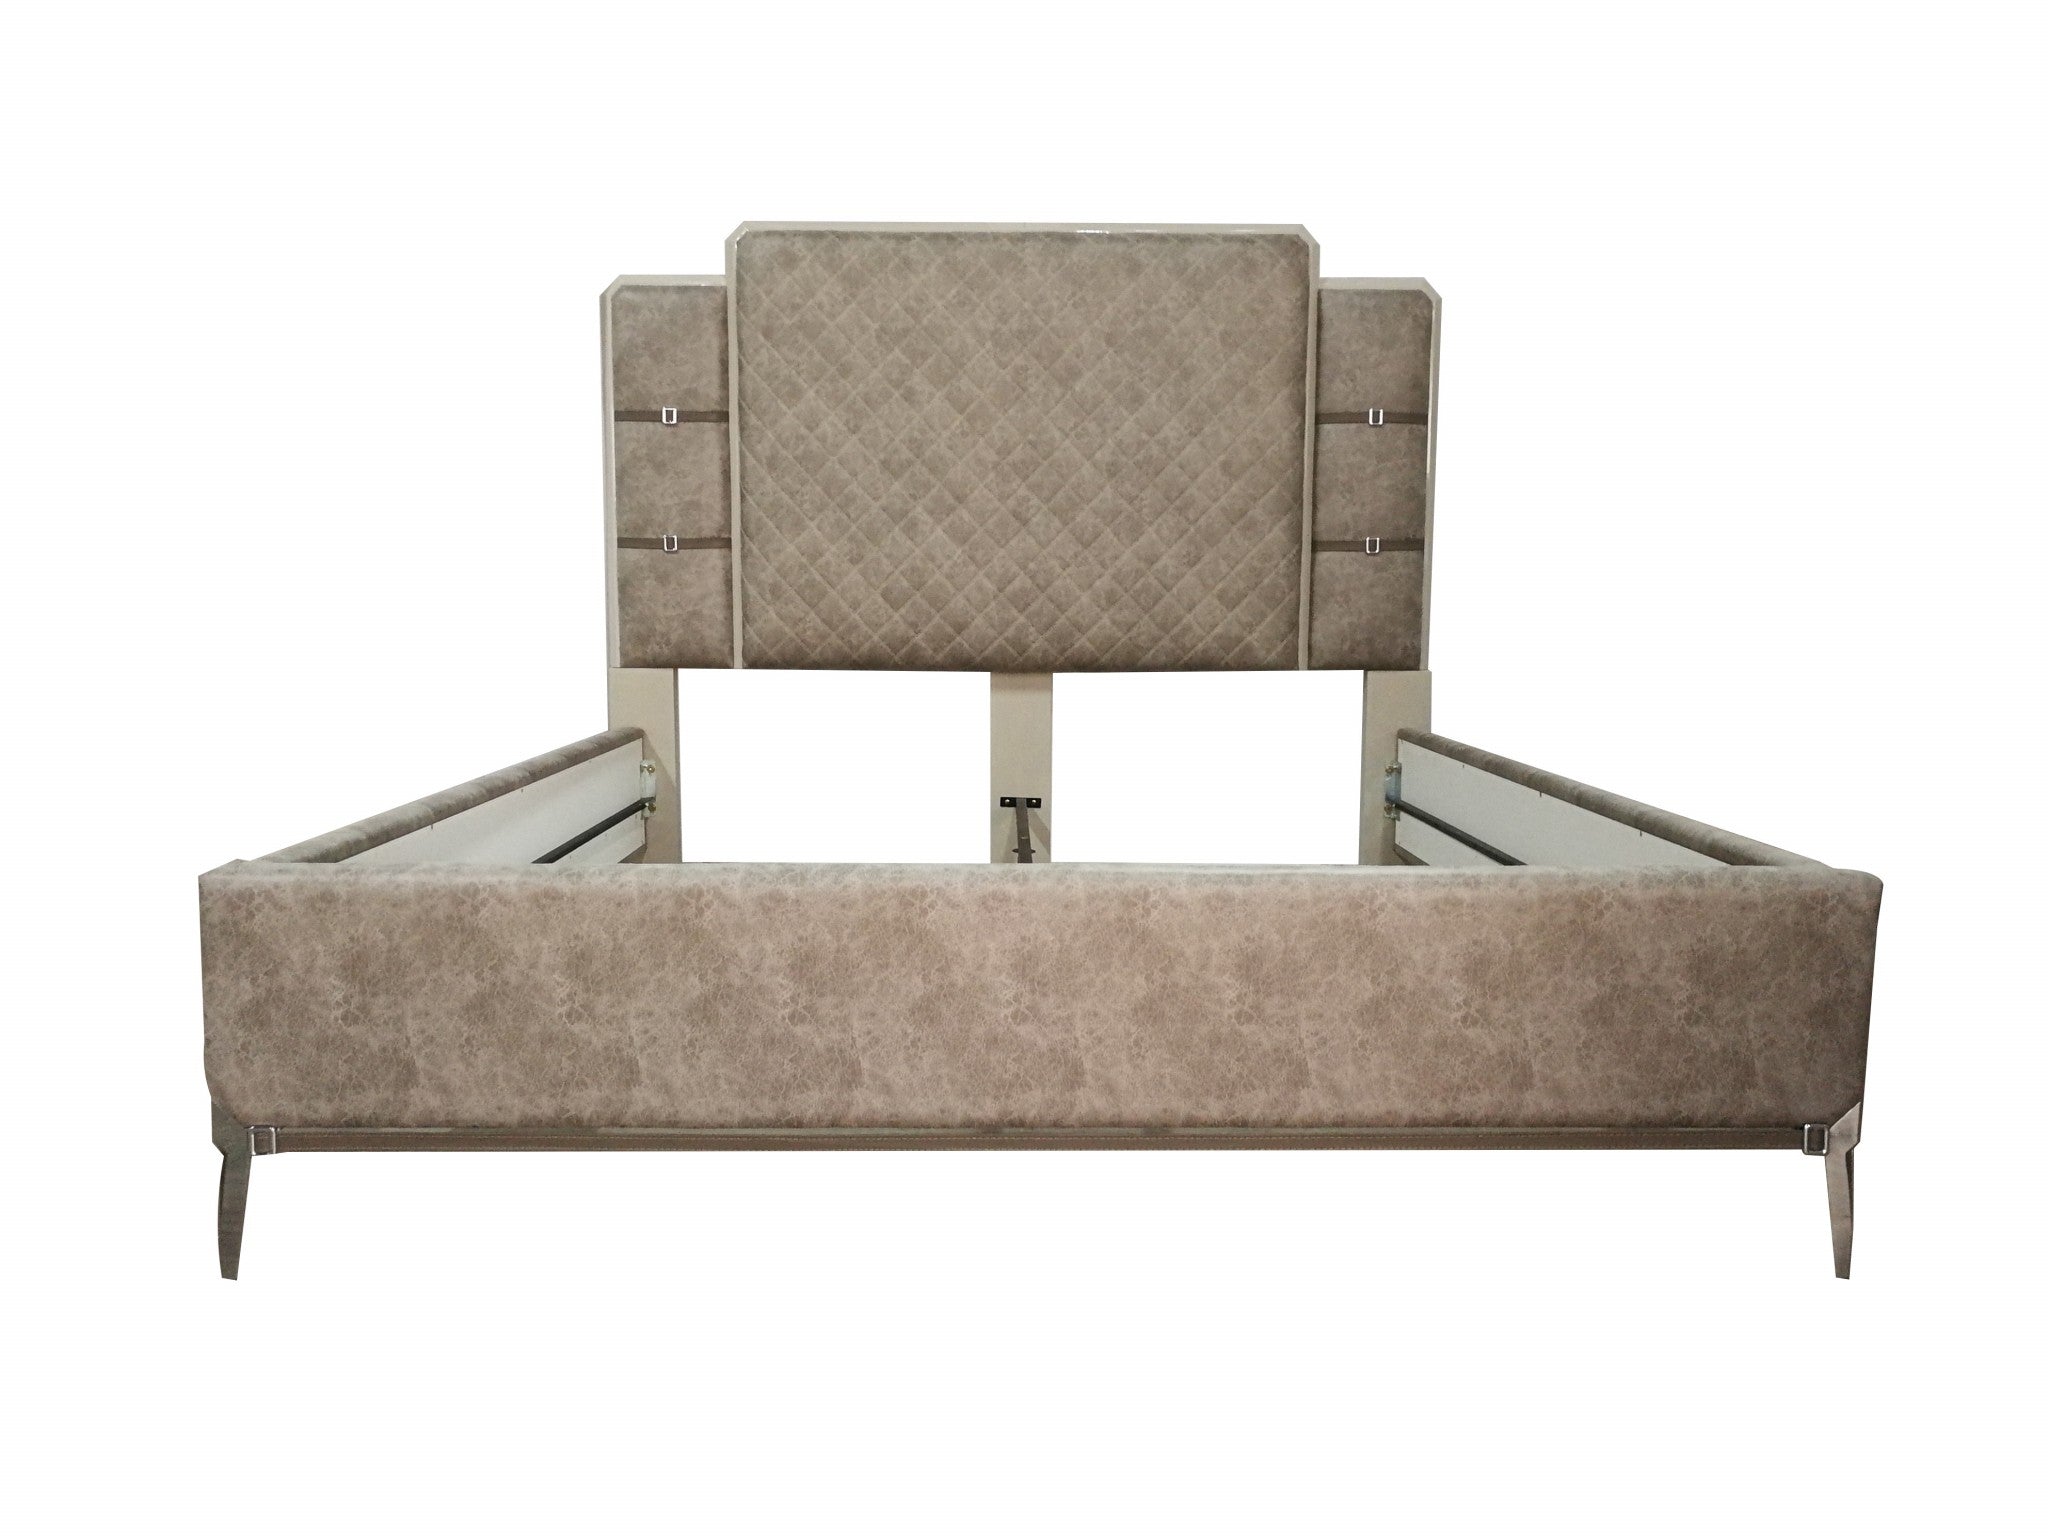 83" X 86" X 65" Vintage Beige PU Wood Upholstered (Bed) Metal Leg Veneer (Melamine) Eastern King Bed Default Title